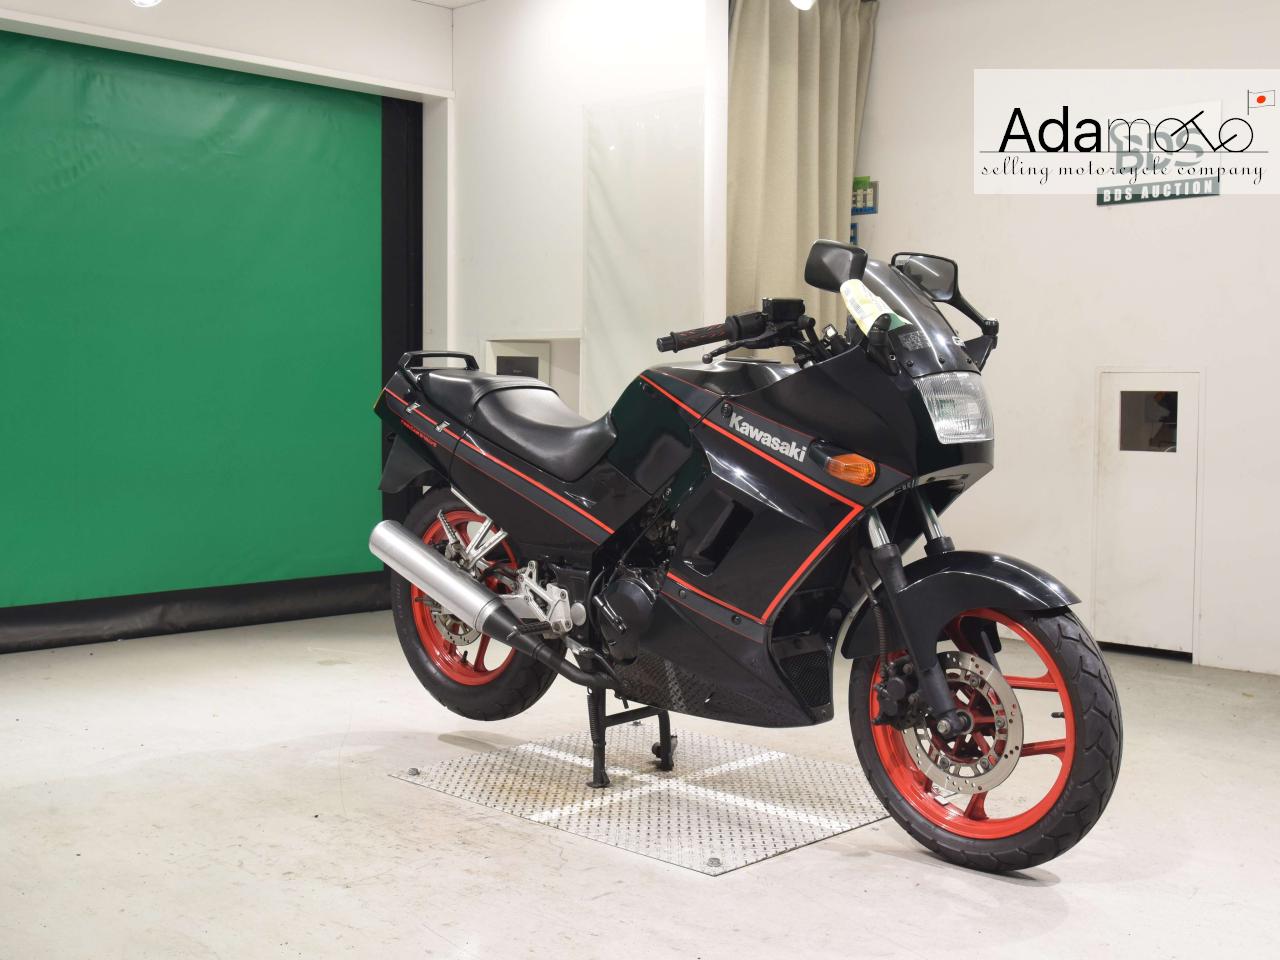 Kawasaki GPX250R - Adamoto - Motorcycles from Japan